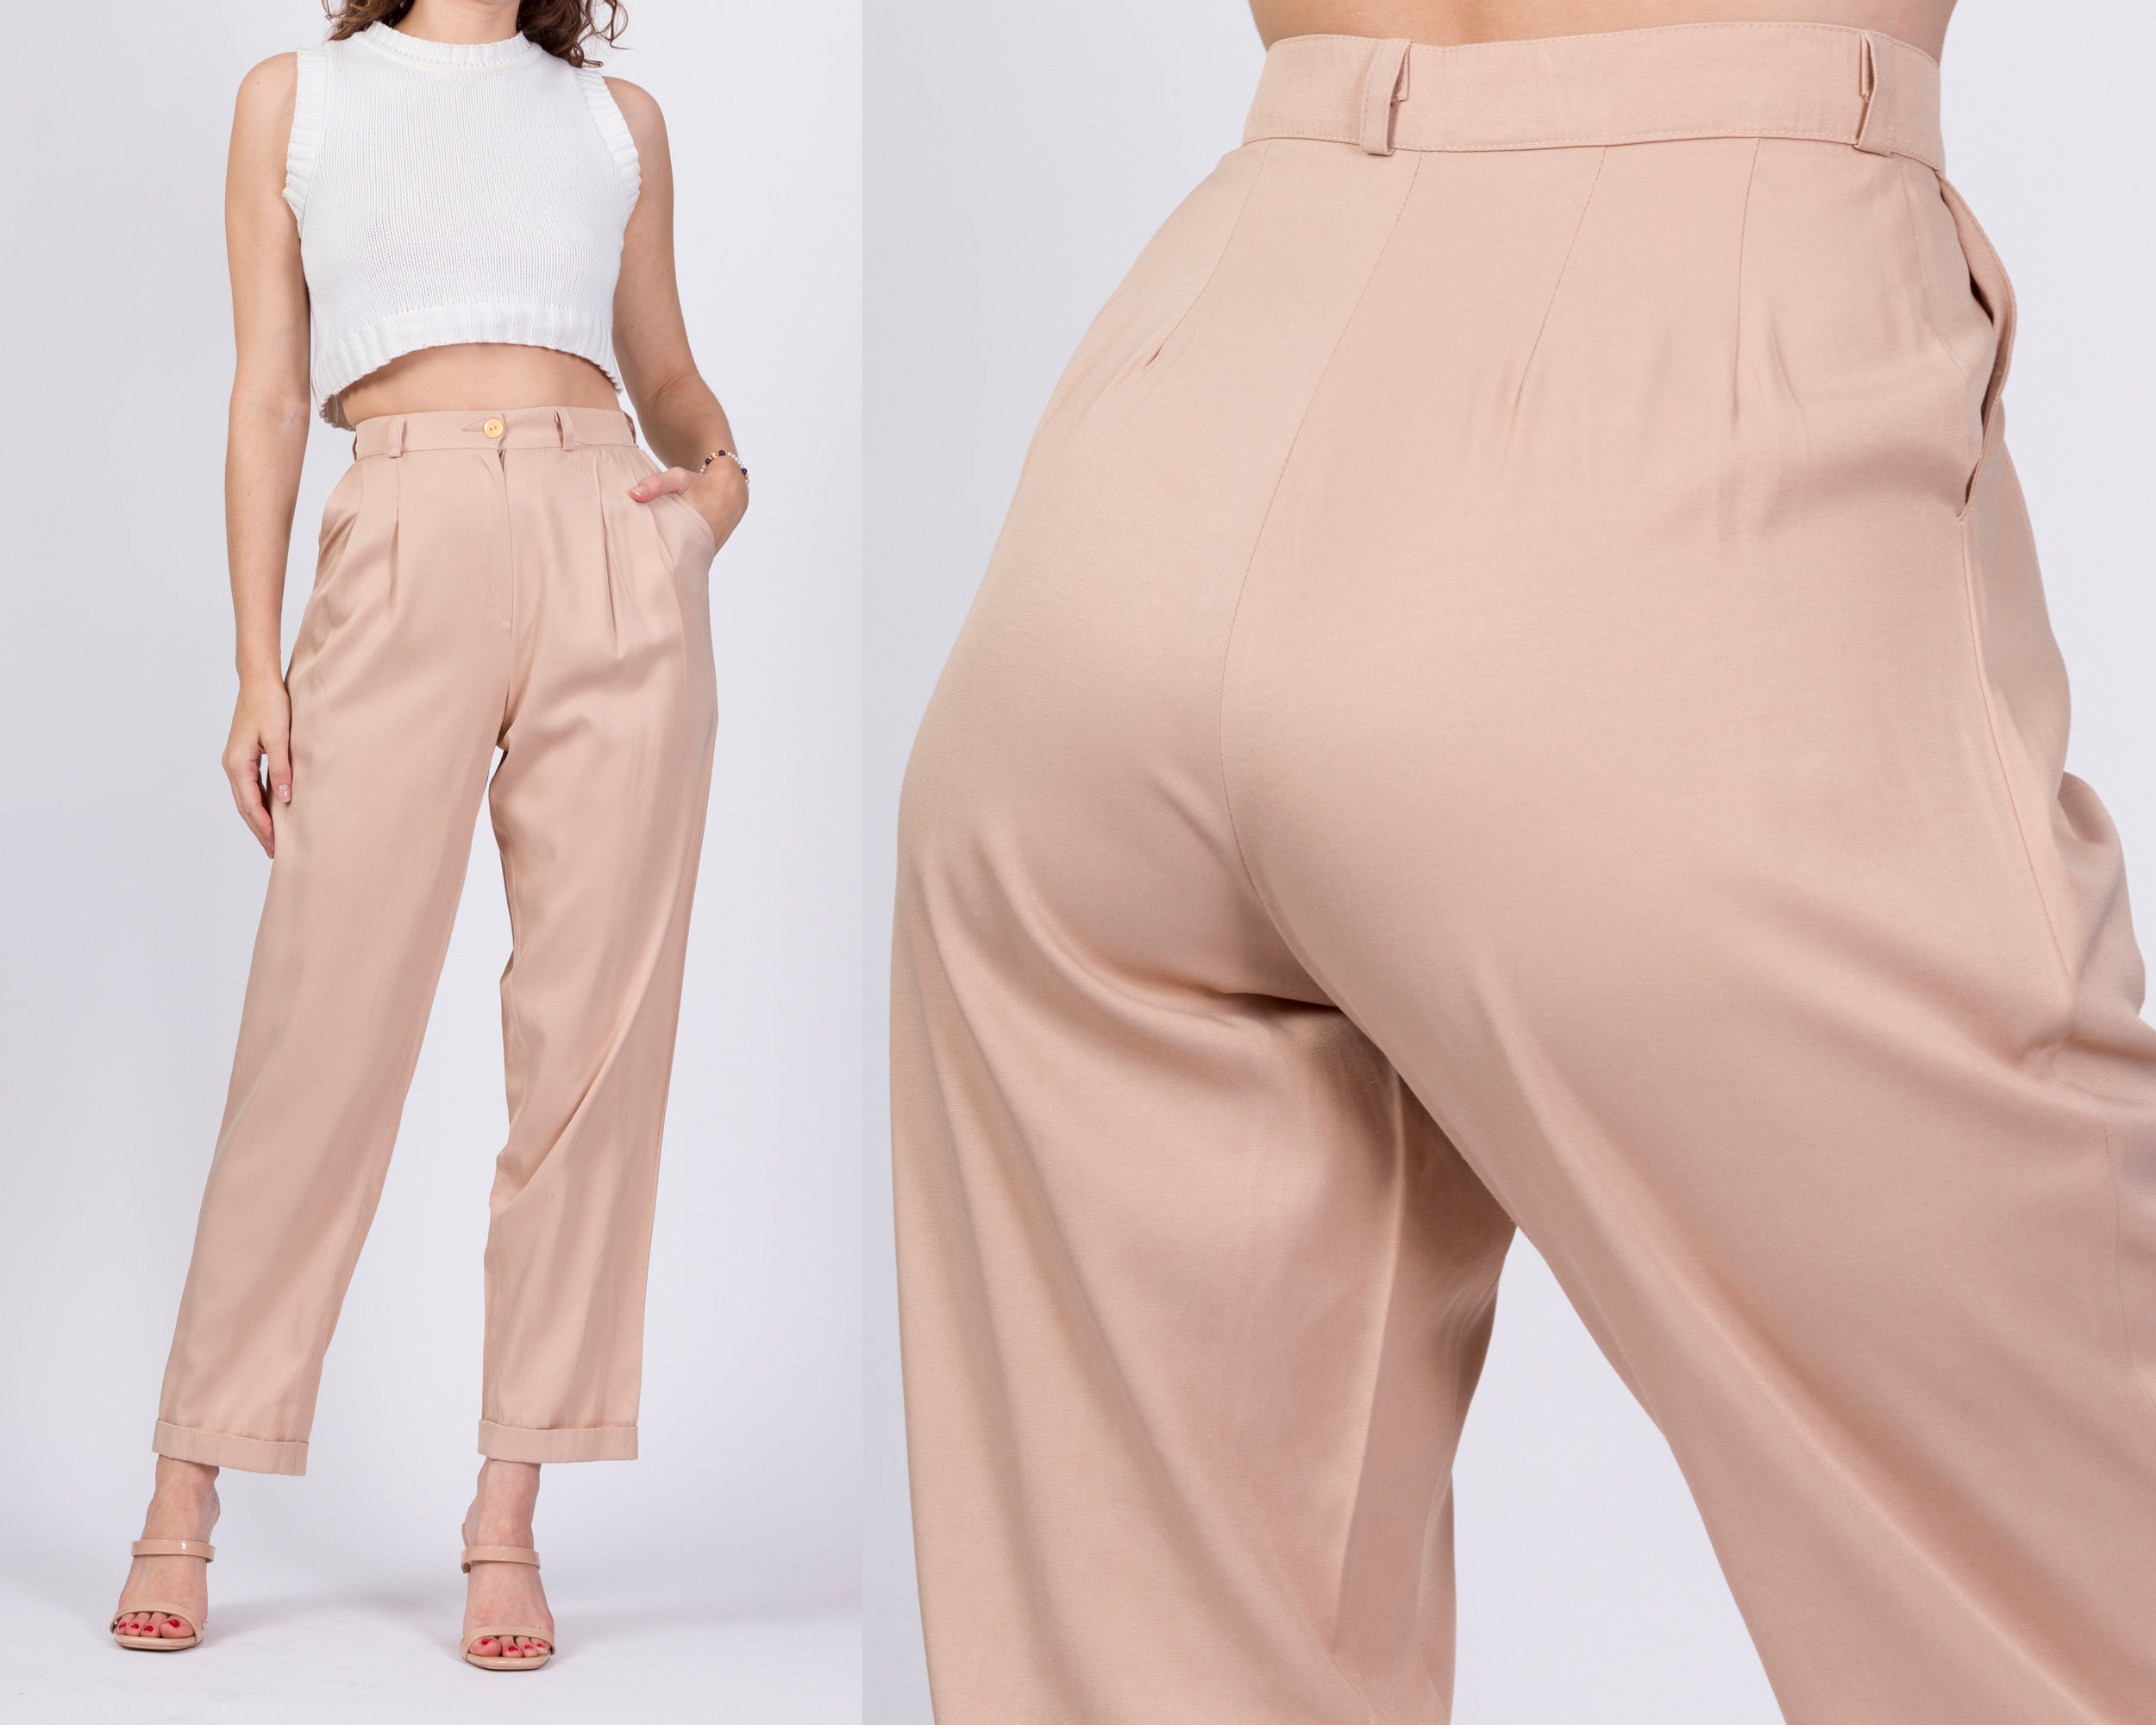 Pantalones Cónicos De Cintura Ajustable Y Cordón Para Mujer Con Bolsillos, Mode de Mujer